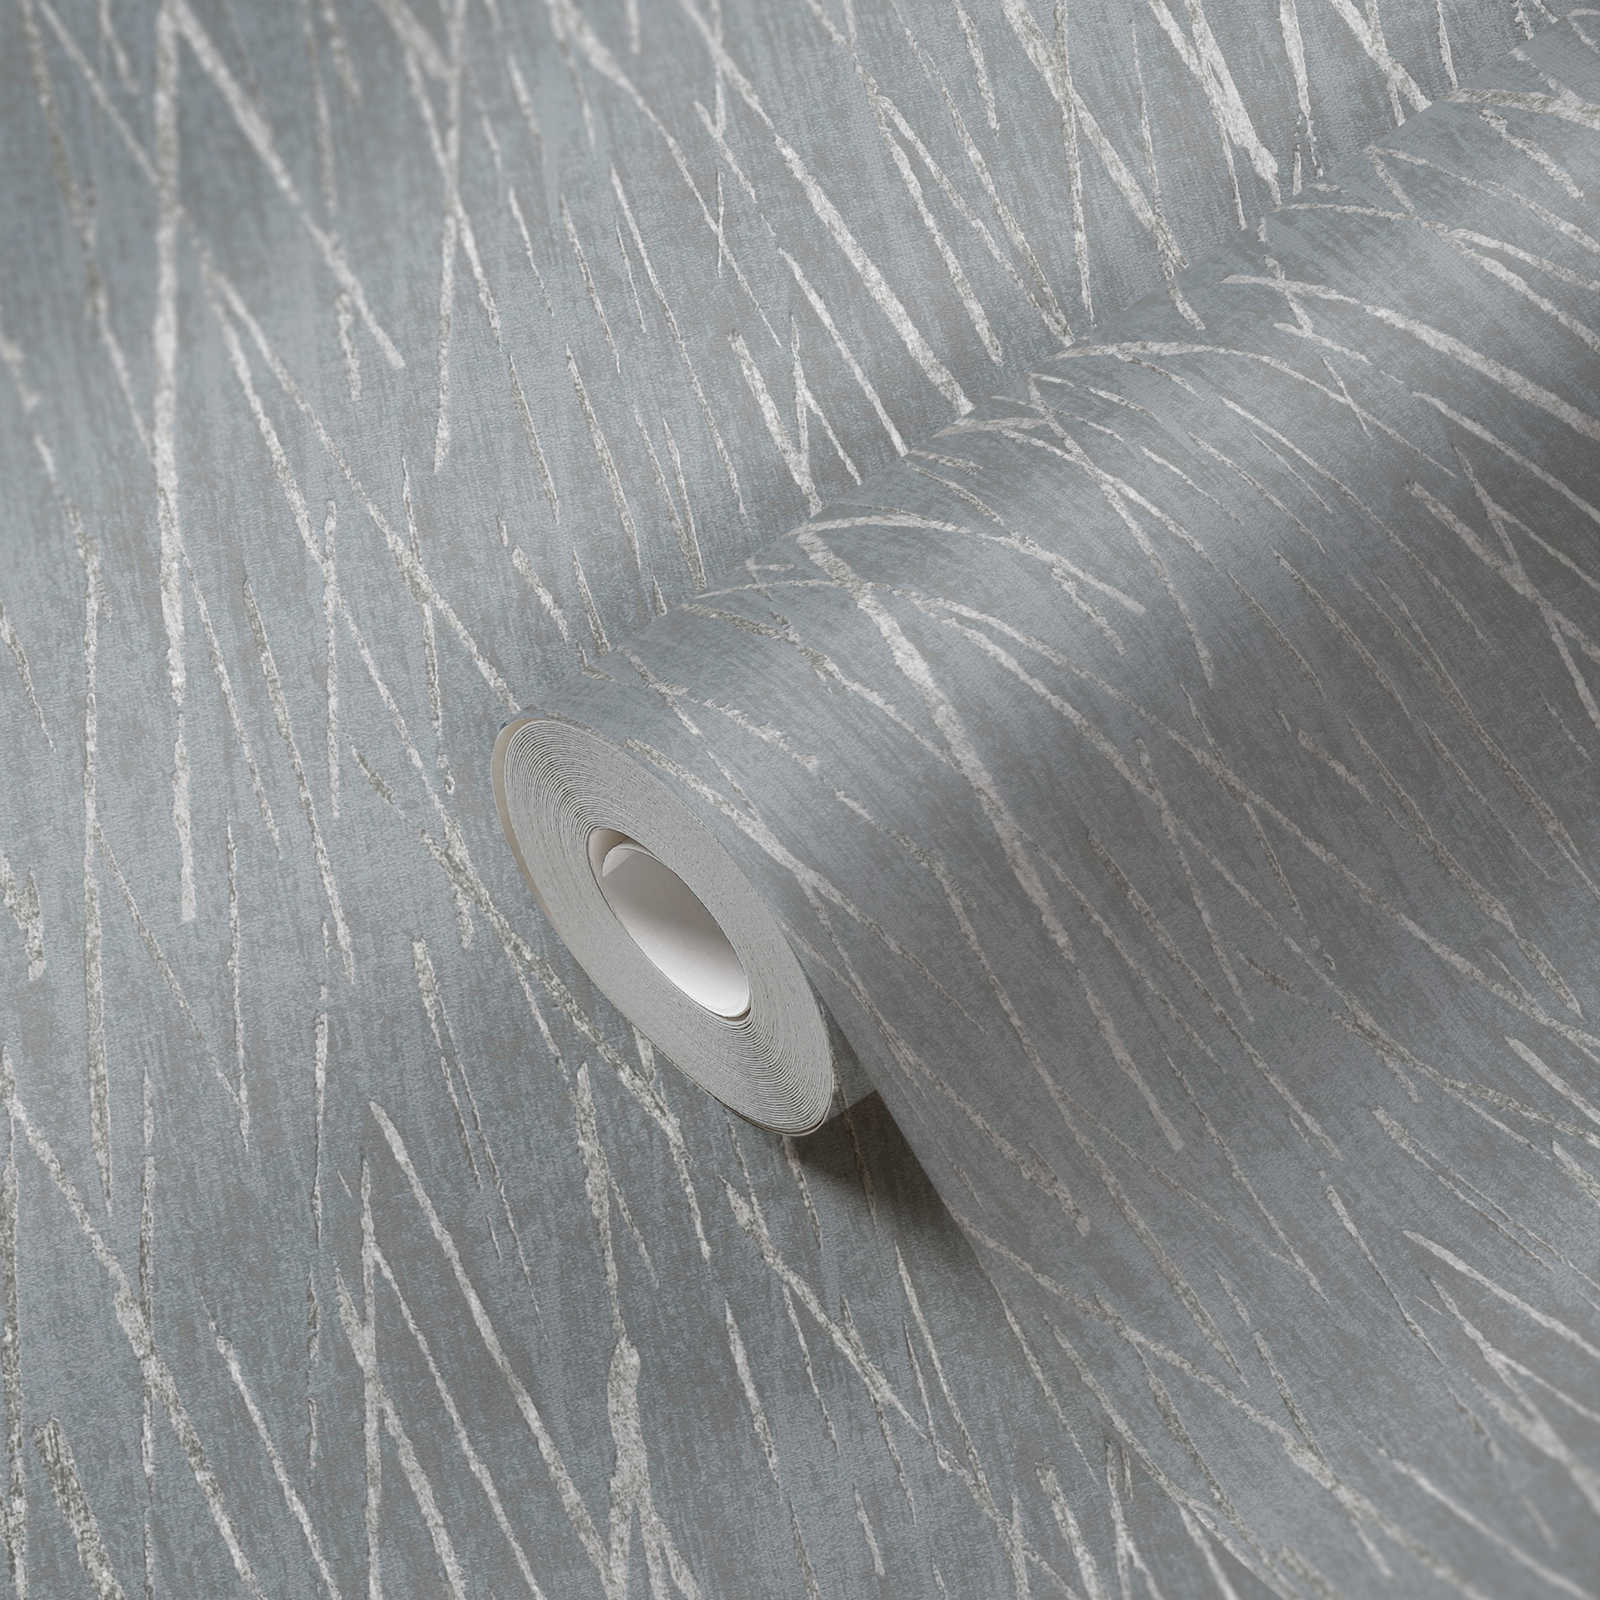             Carta da parati in tessuto non tessuto con disegno della natura ed effetto metallizzato - grigio, metallizzato
        